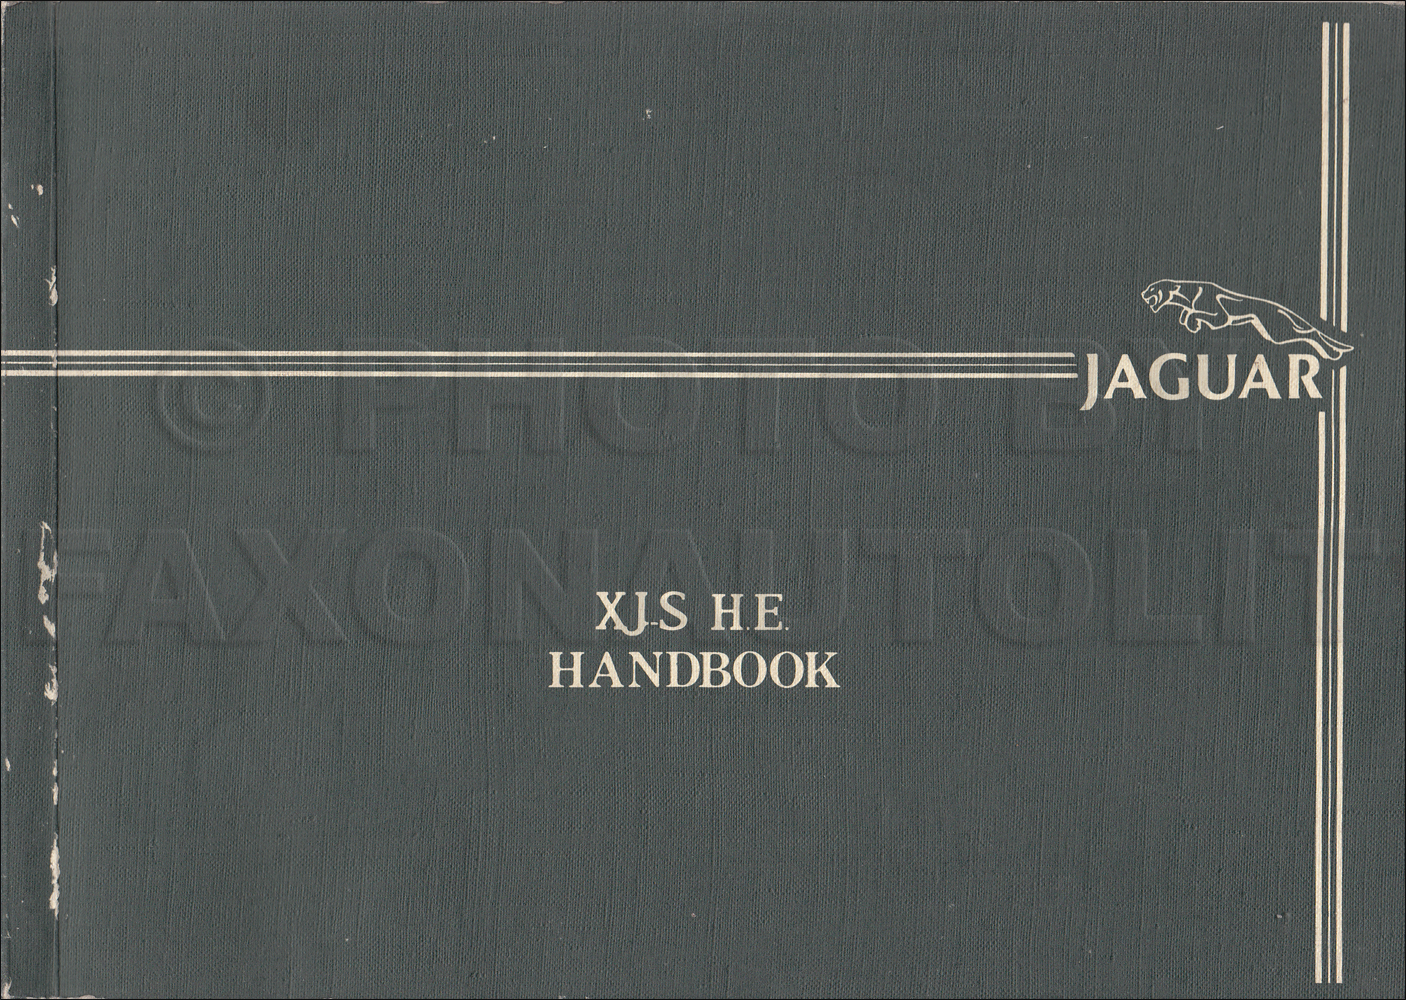 1980-1983 Jaguar XJS HE Owner's Manual Original